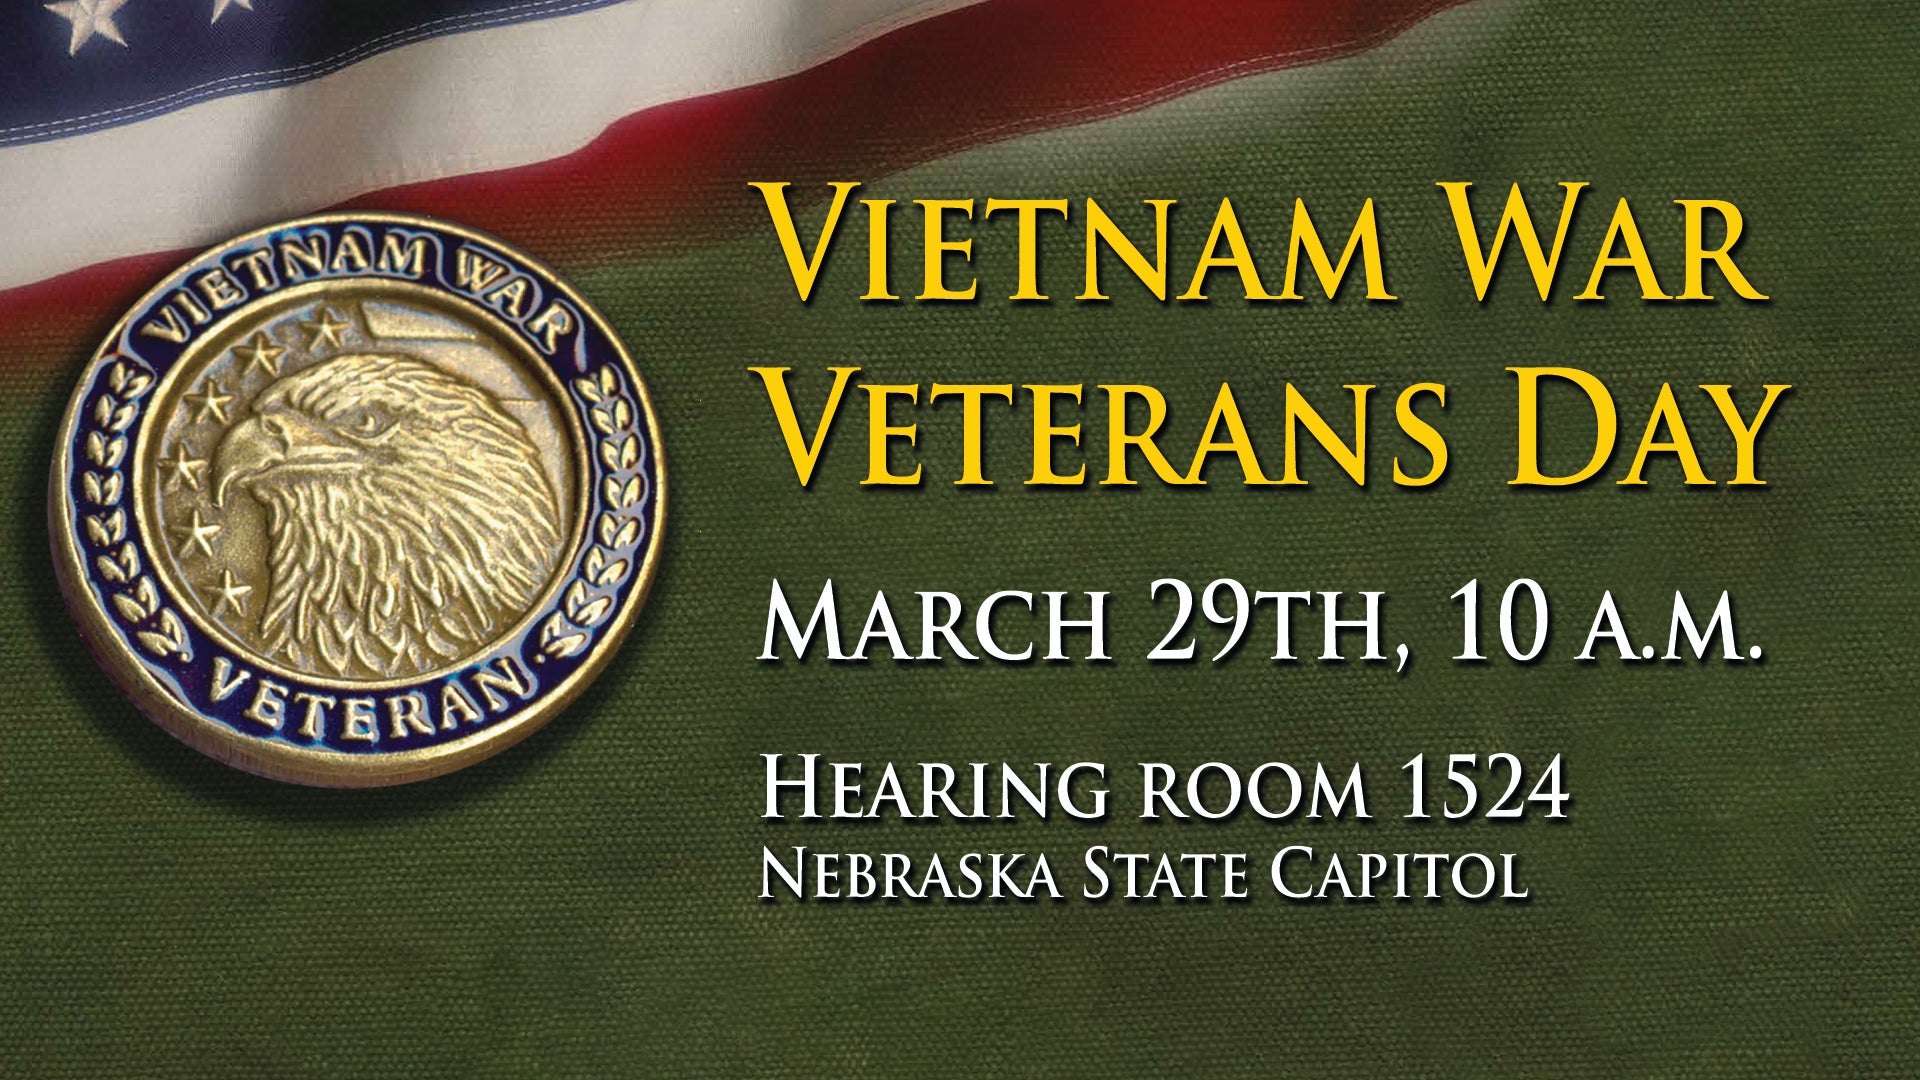 Vietnam War Veterans Day event flyer